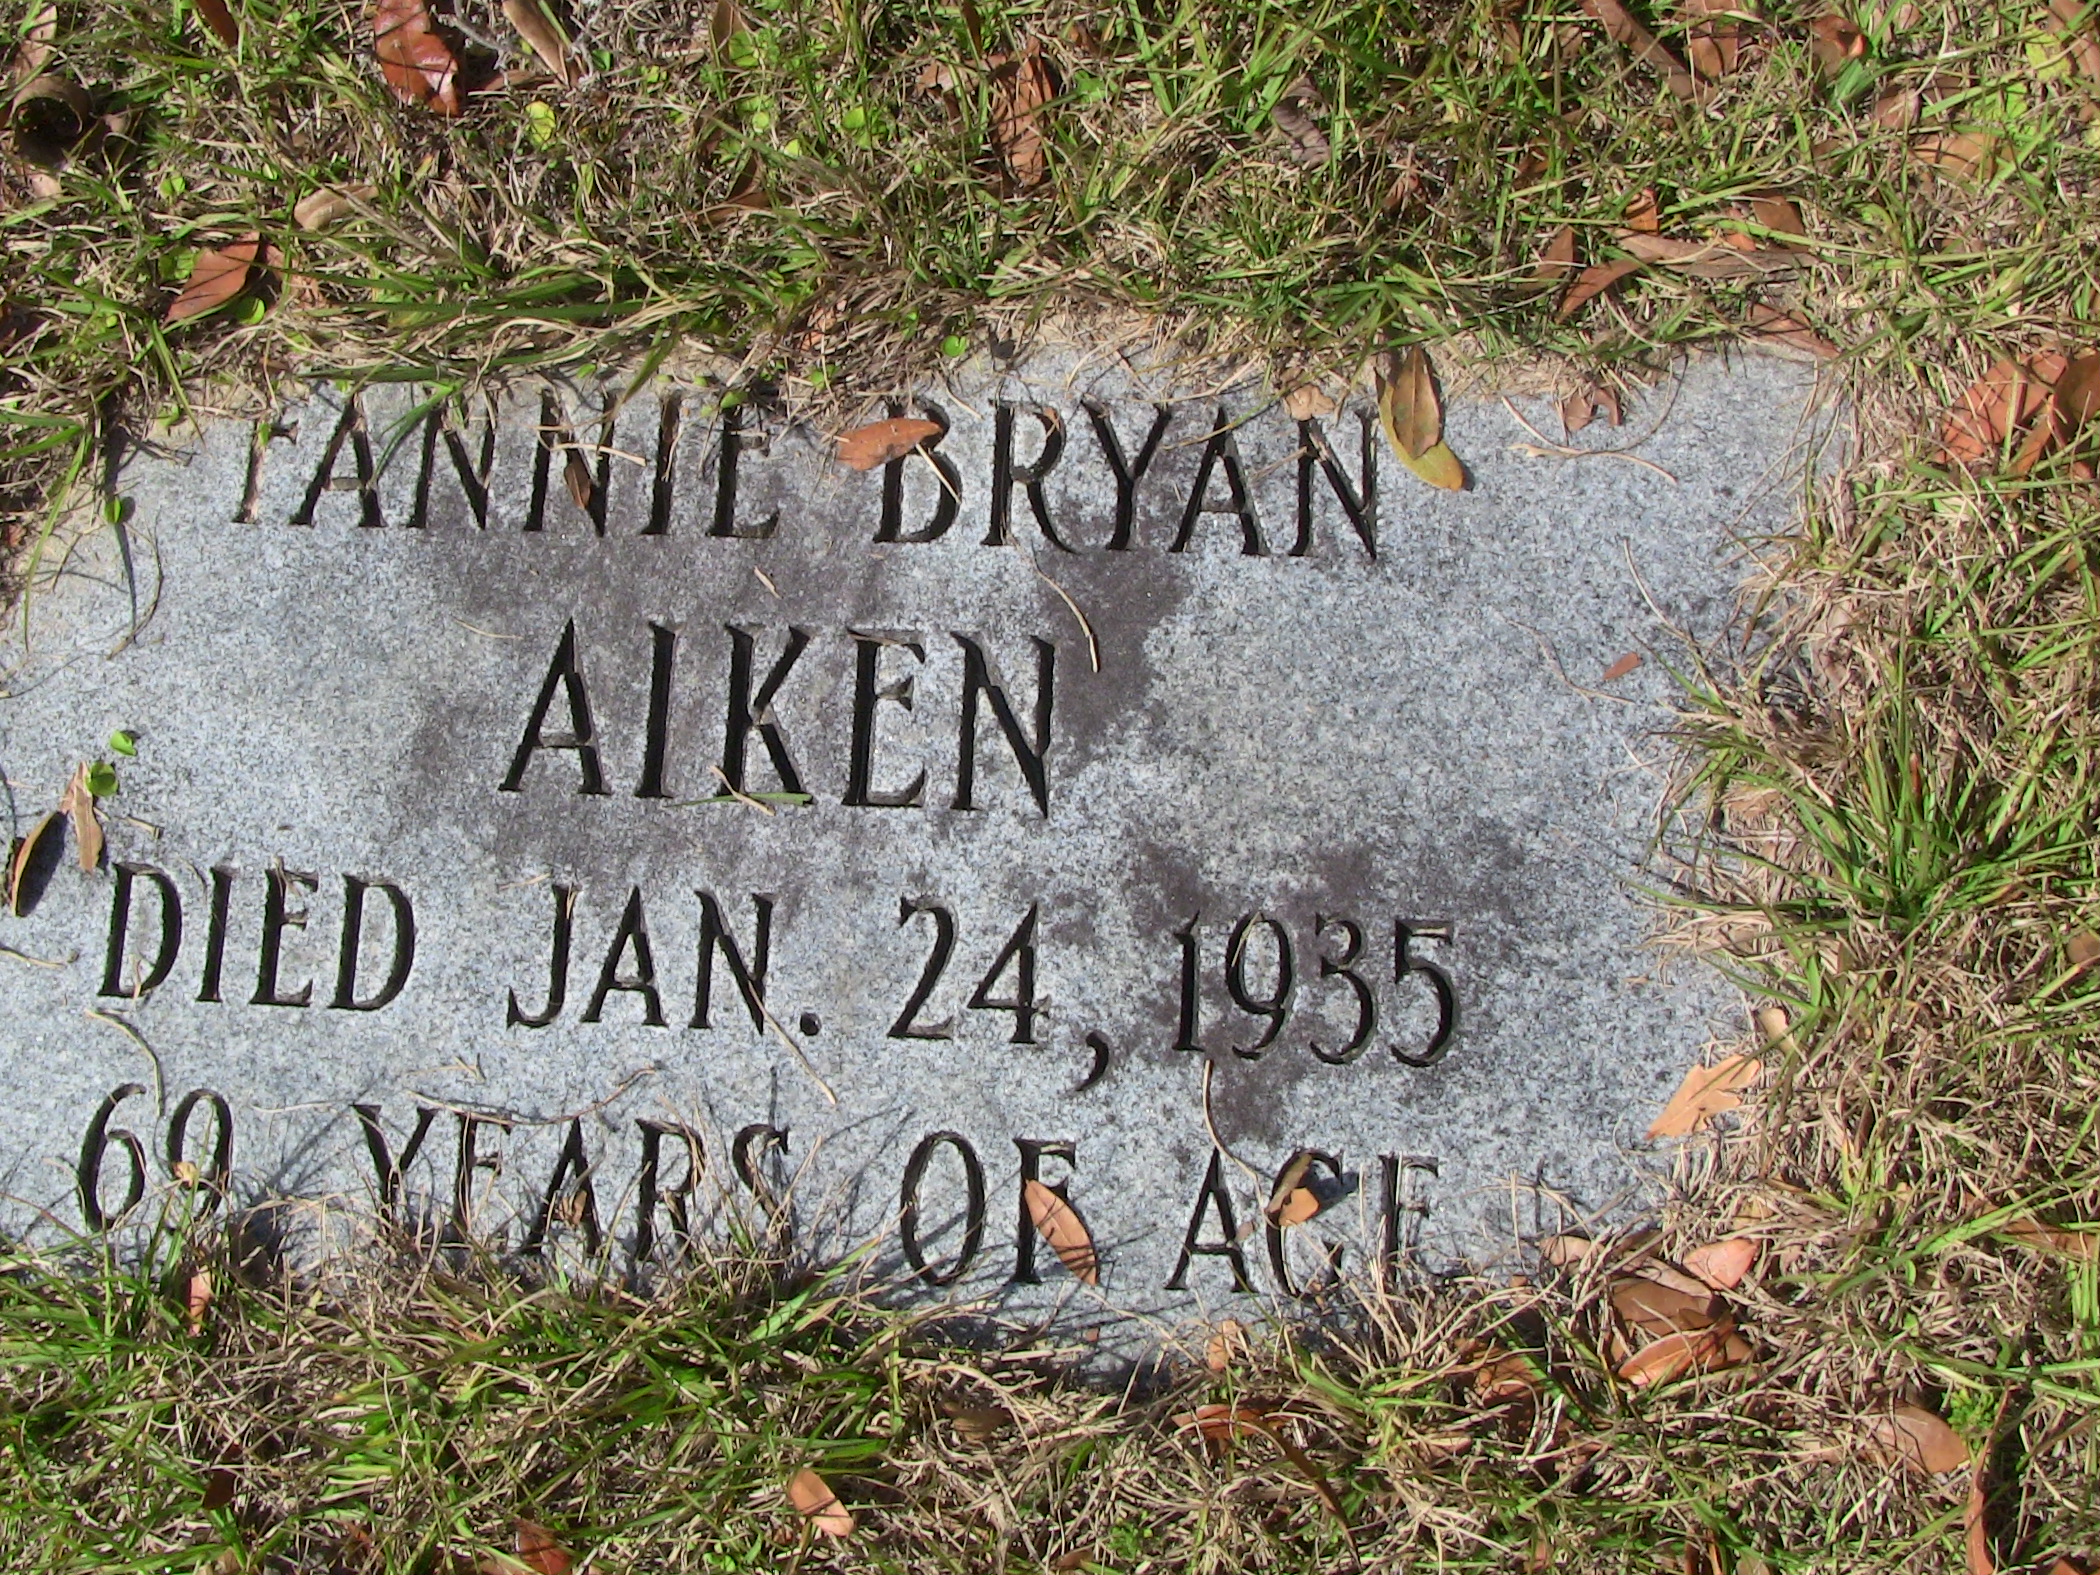 Fannie Bryan Aiken